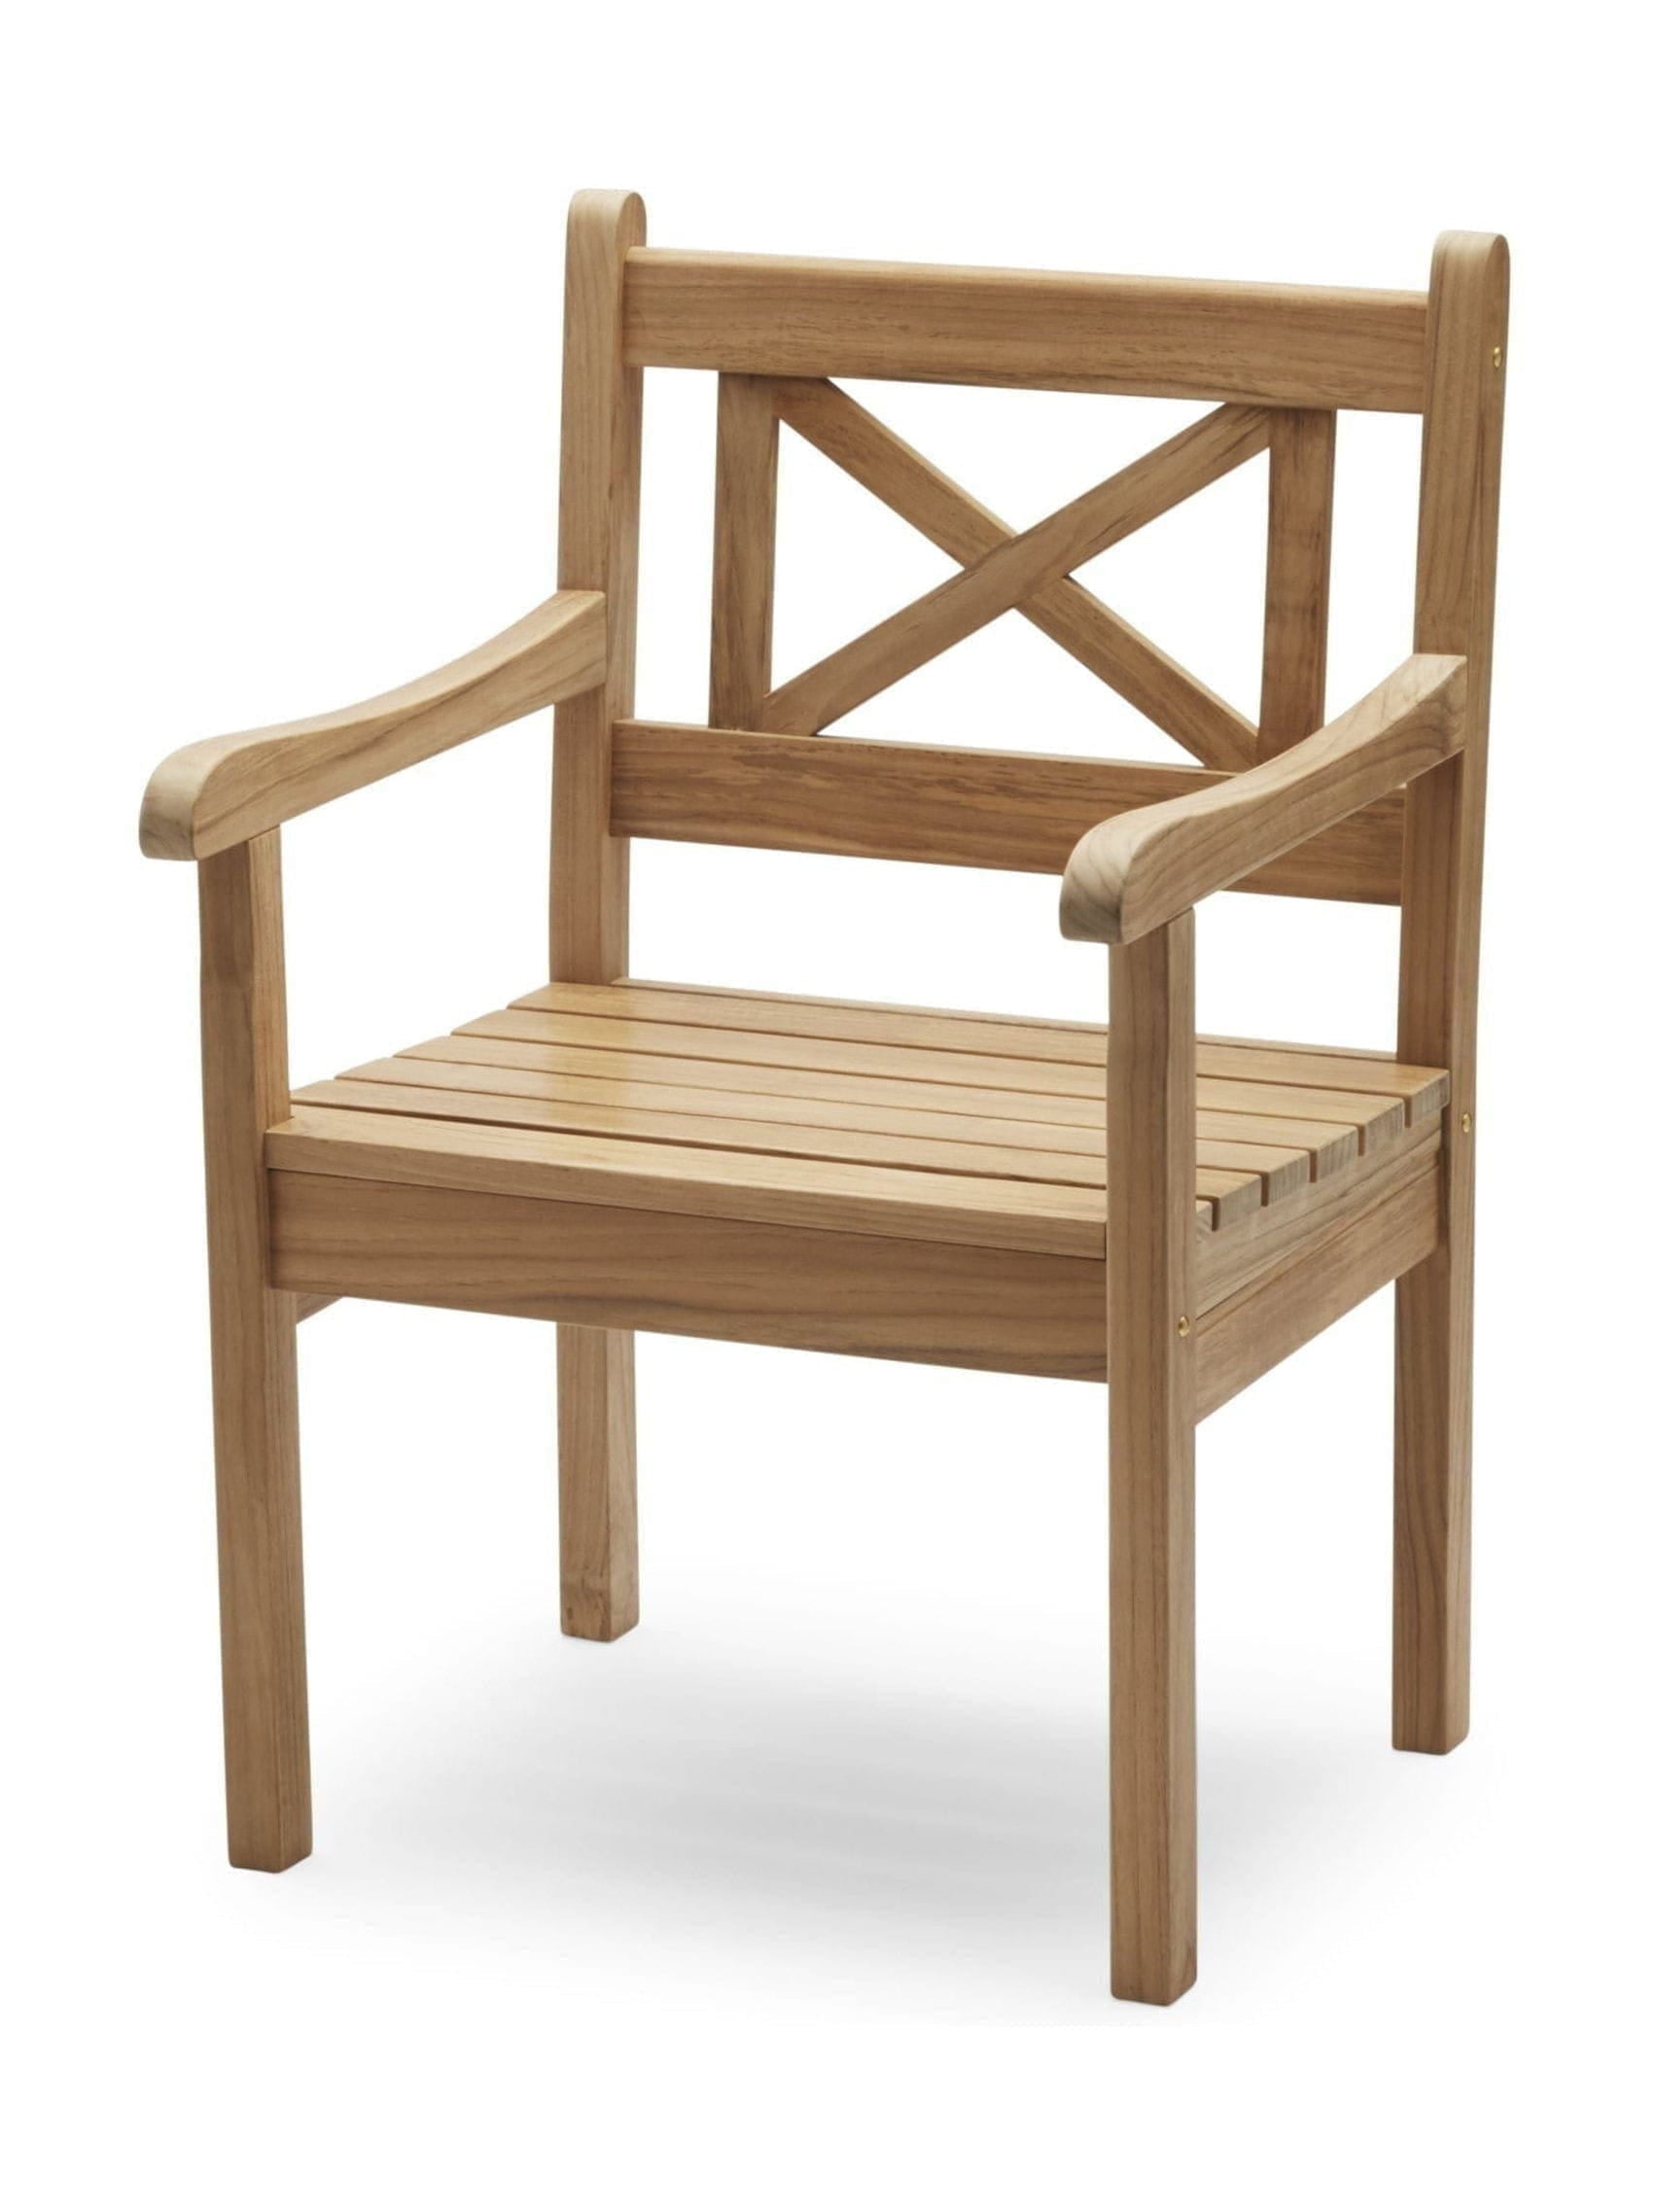 Skagerak Skagen Chair